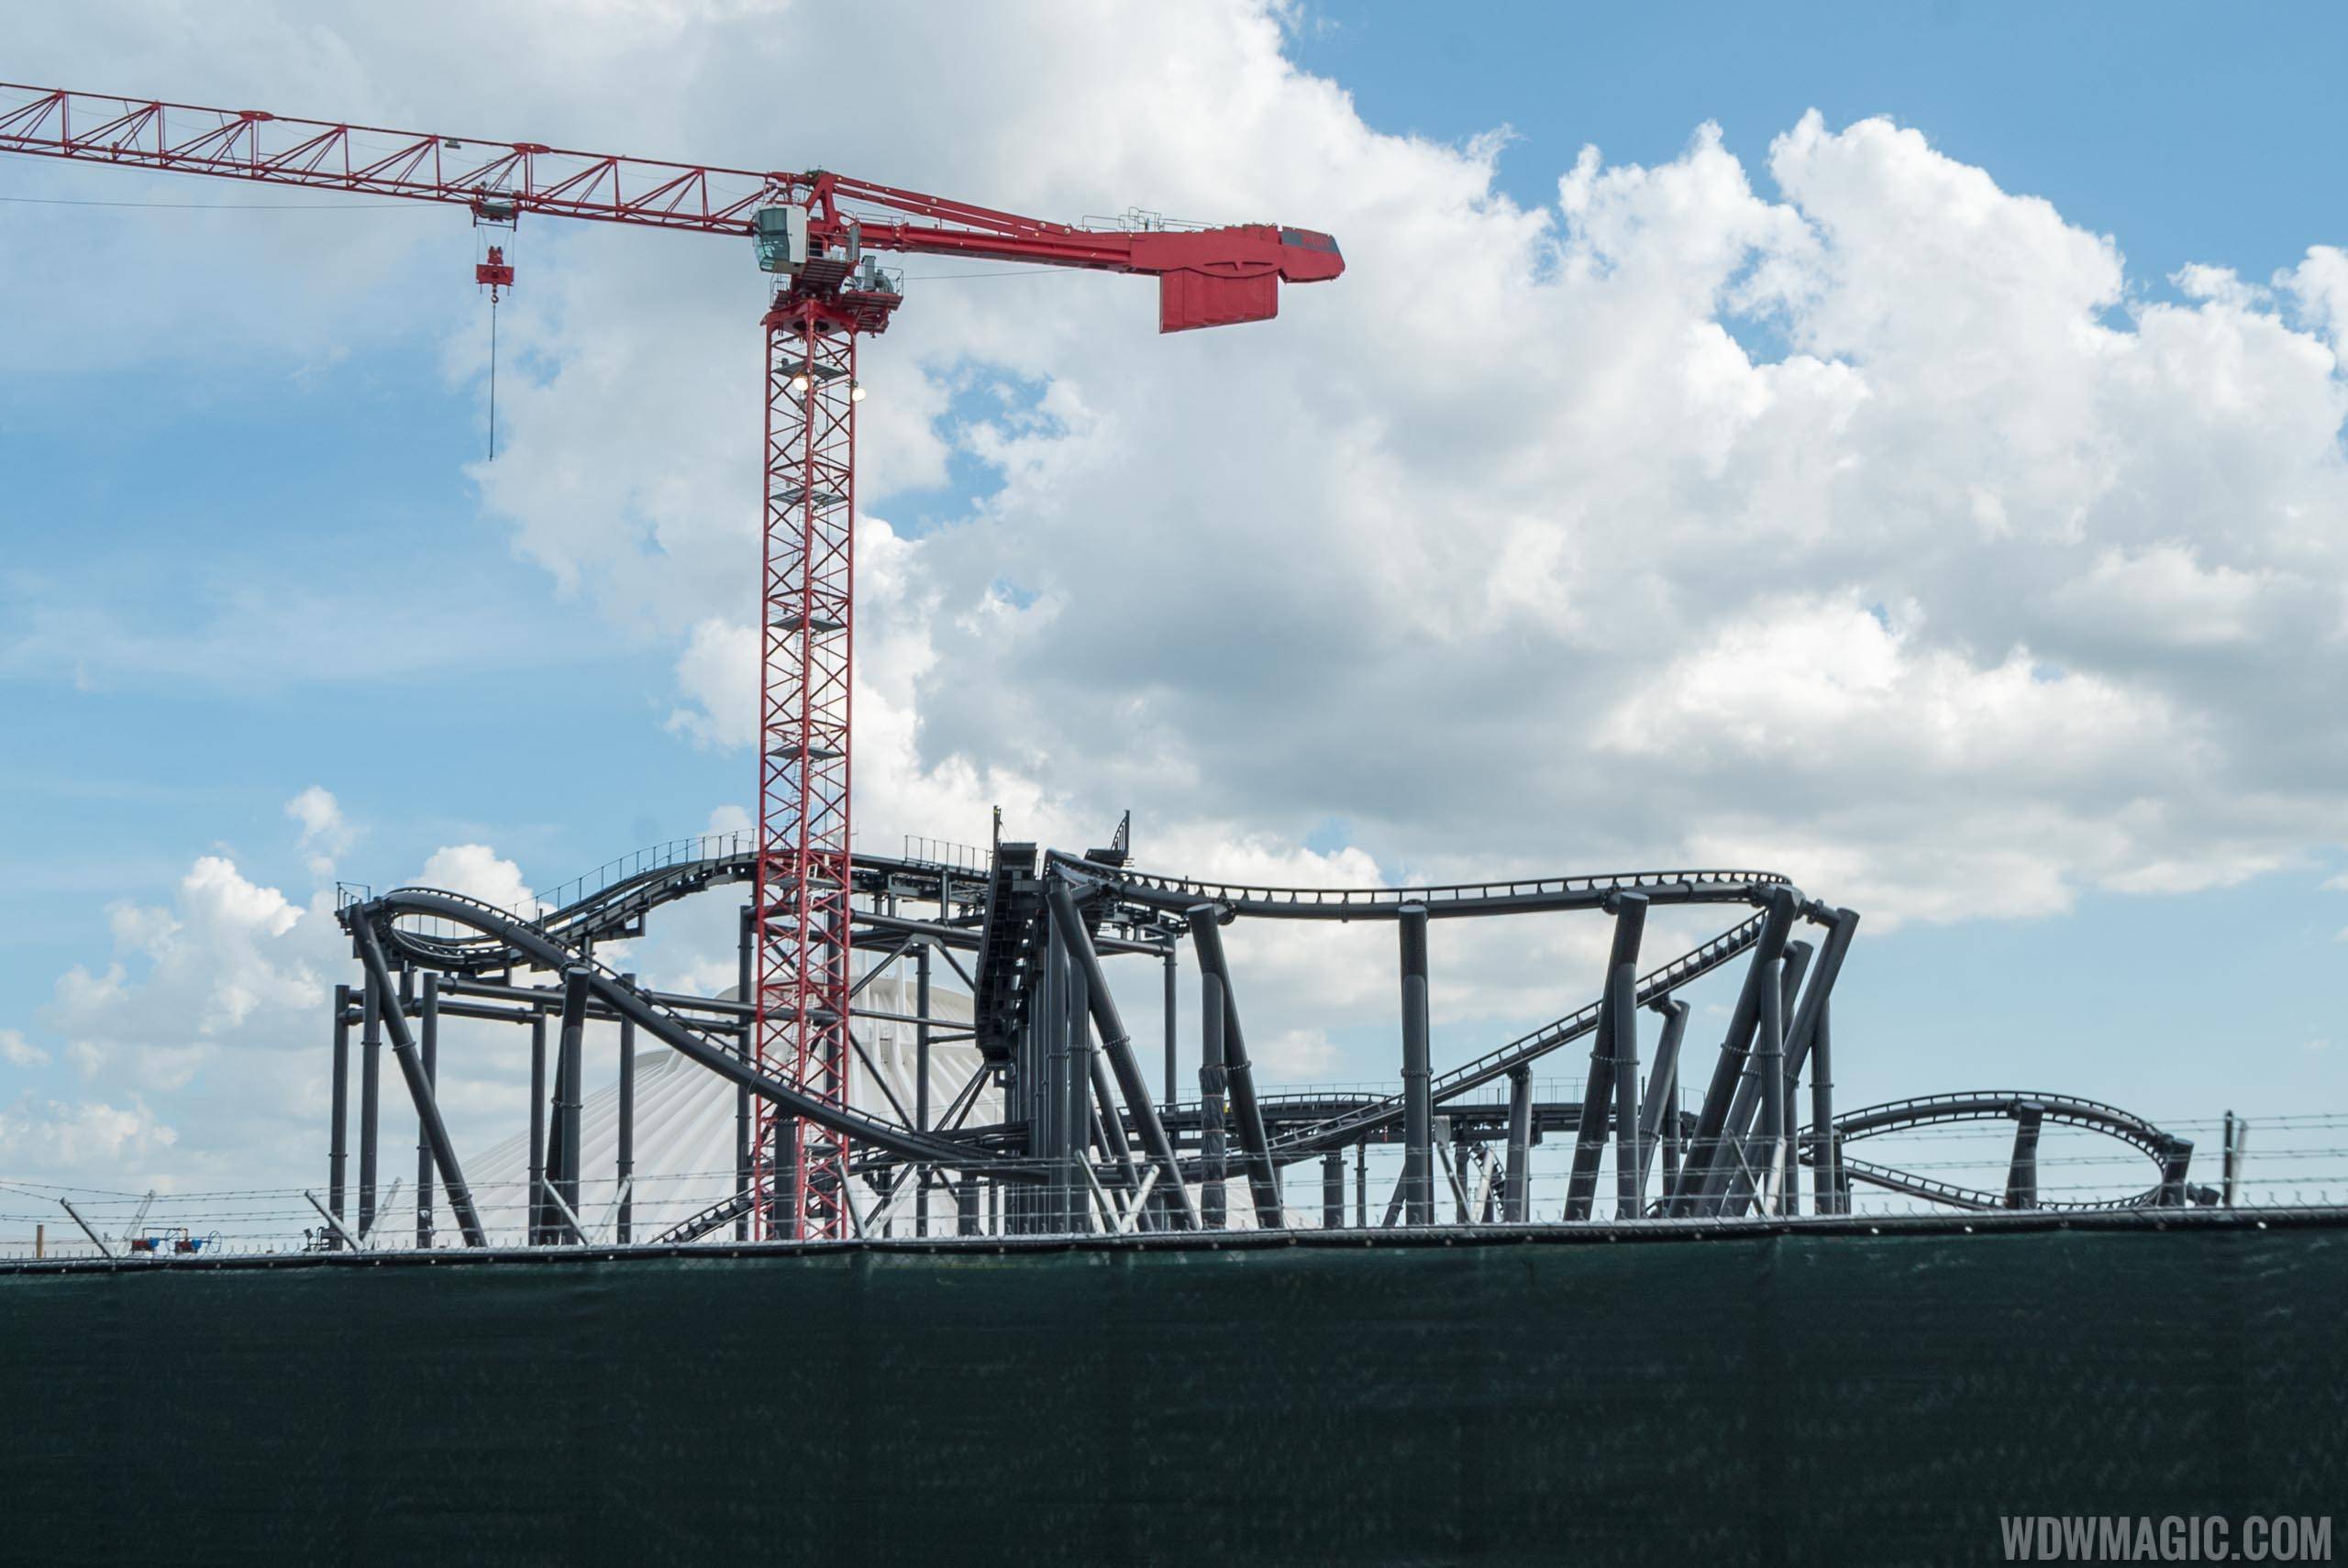 Tron construction site - June 2019